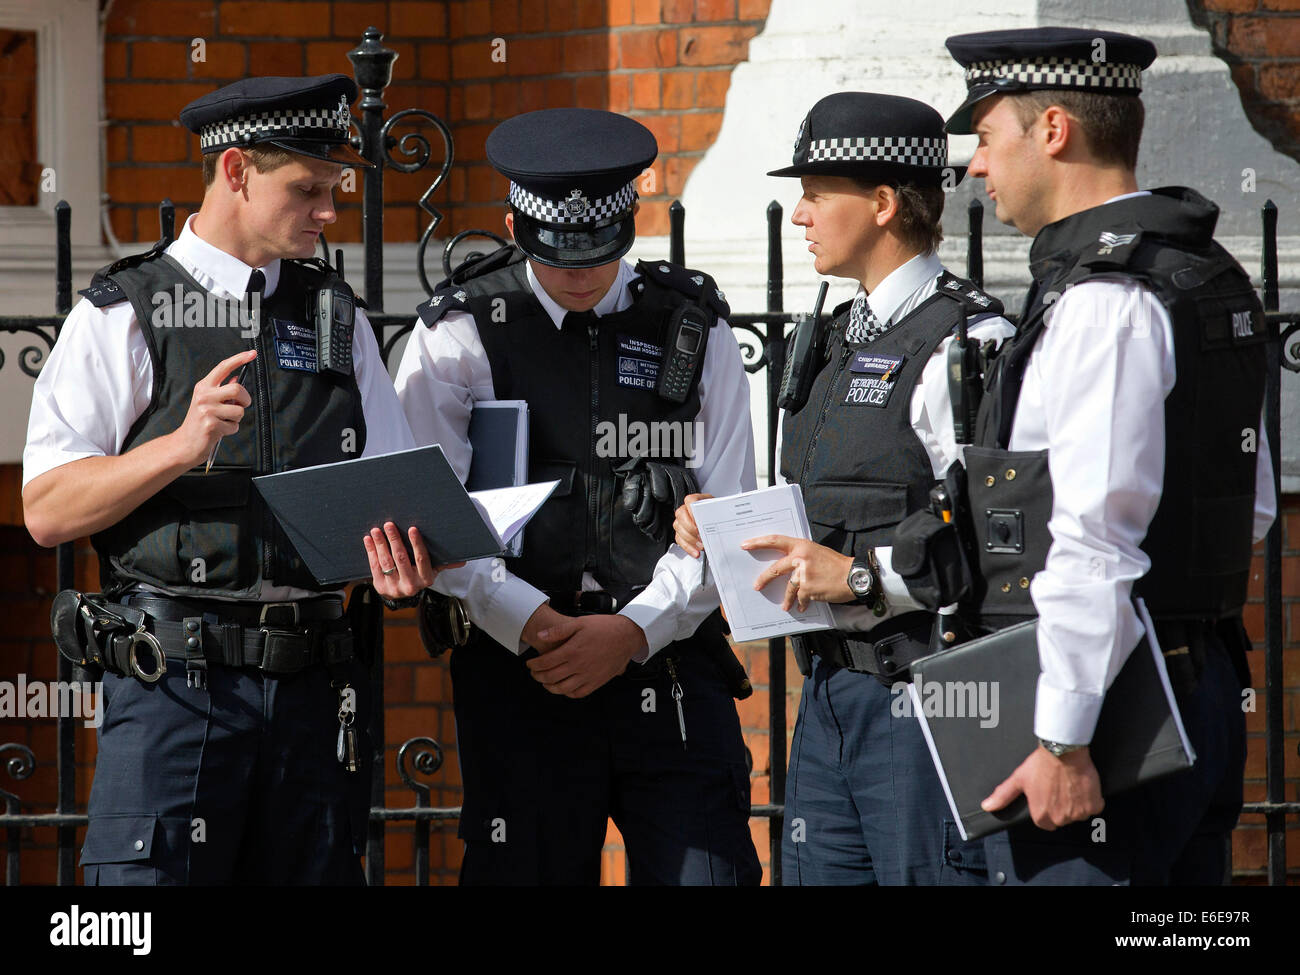 Regno Unito, Londra : gli ufficiali di polizia stare a discutere di una situazione nel centro di Londra. 18.08.2014. Foto Stock